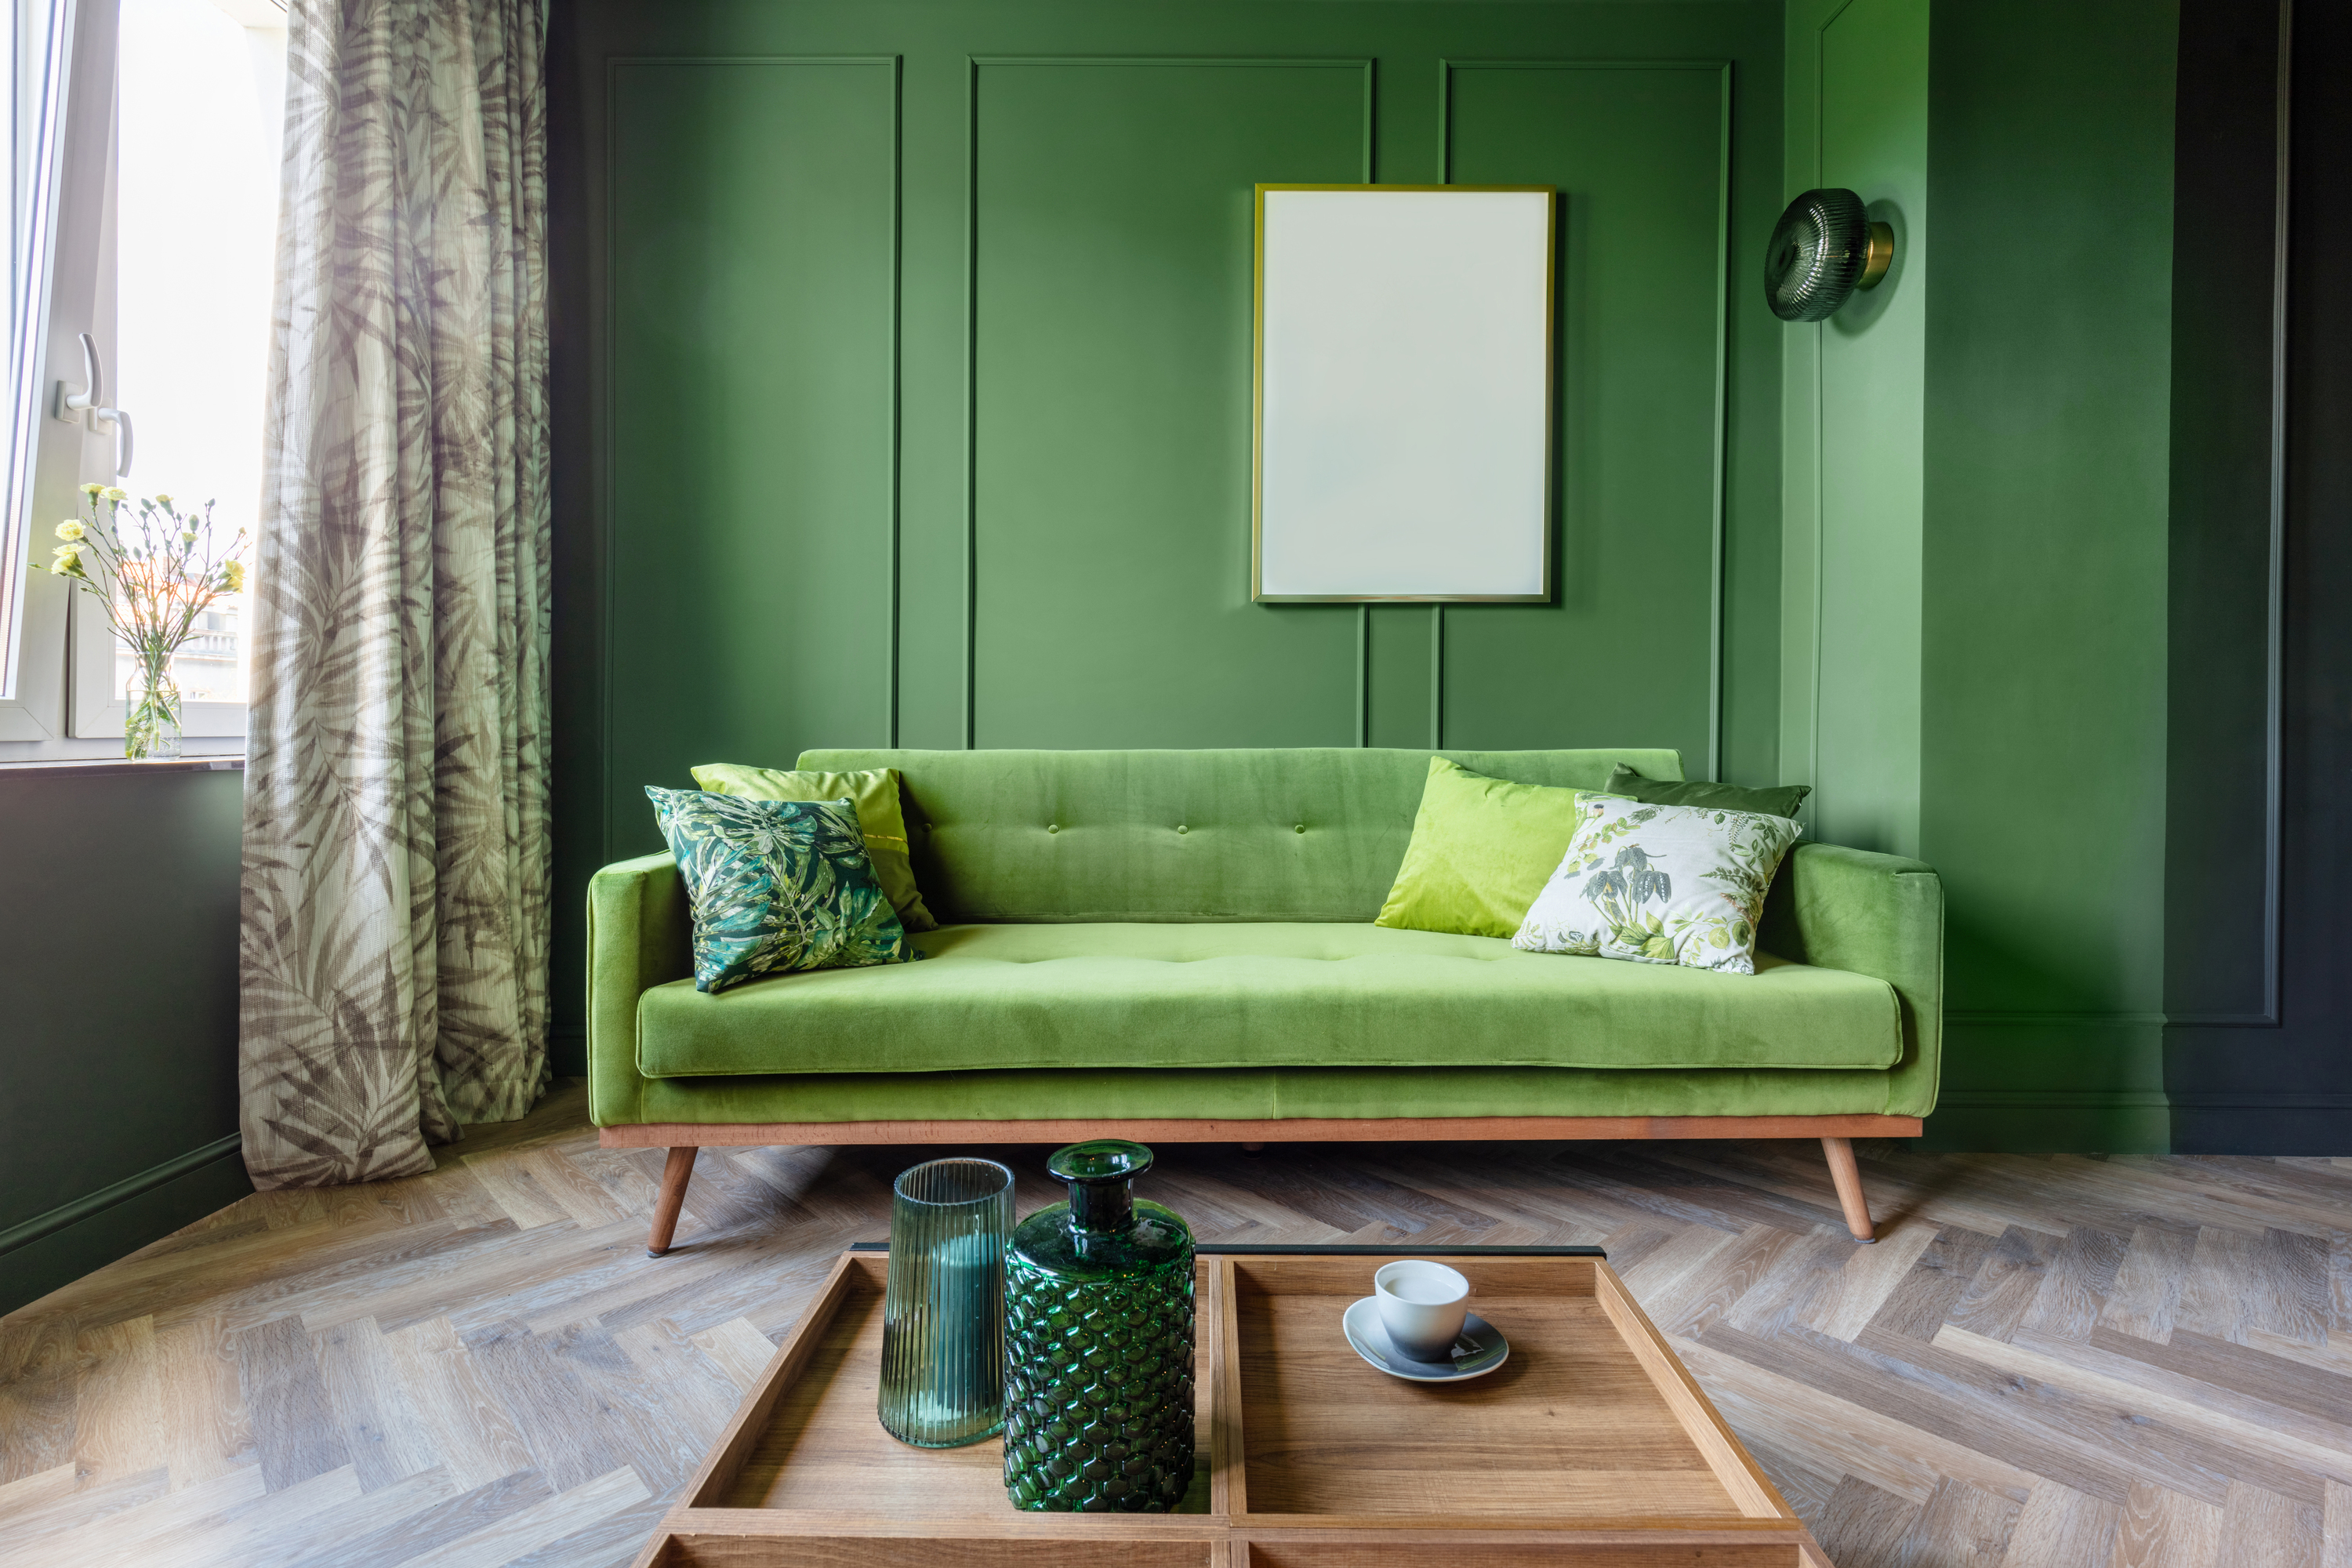 Sala de estar com parede, sofá e acessórios em verde